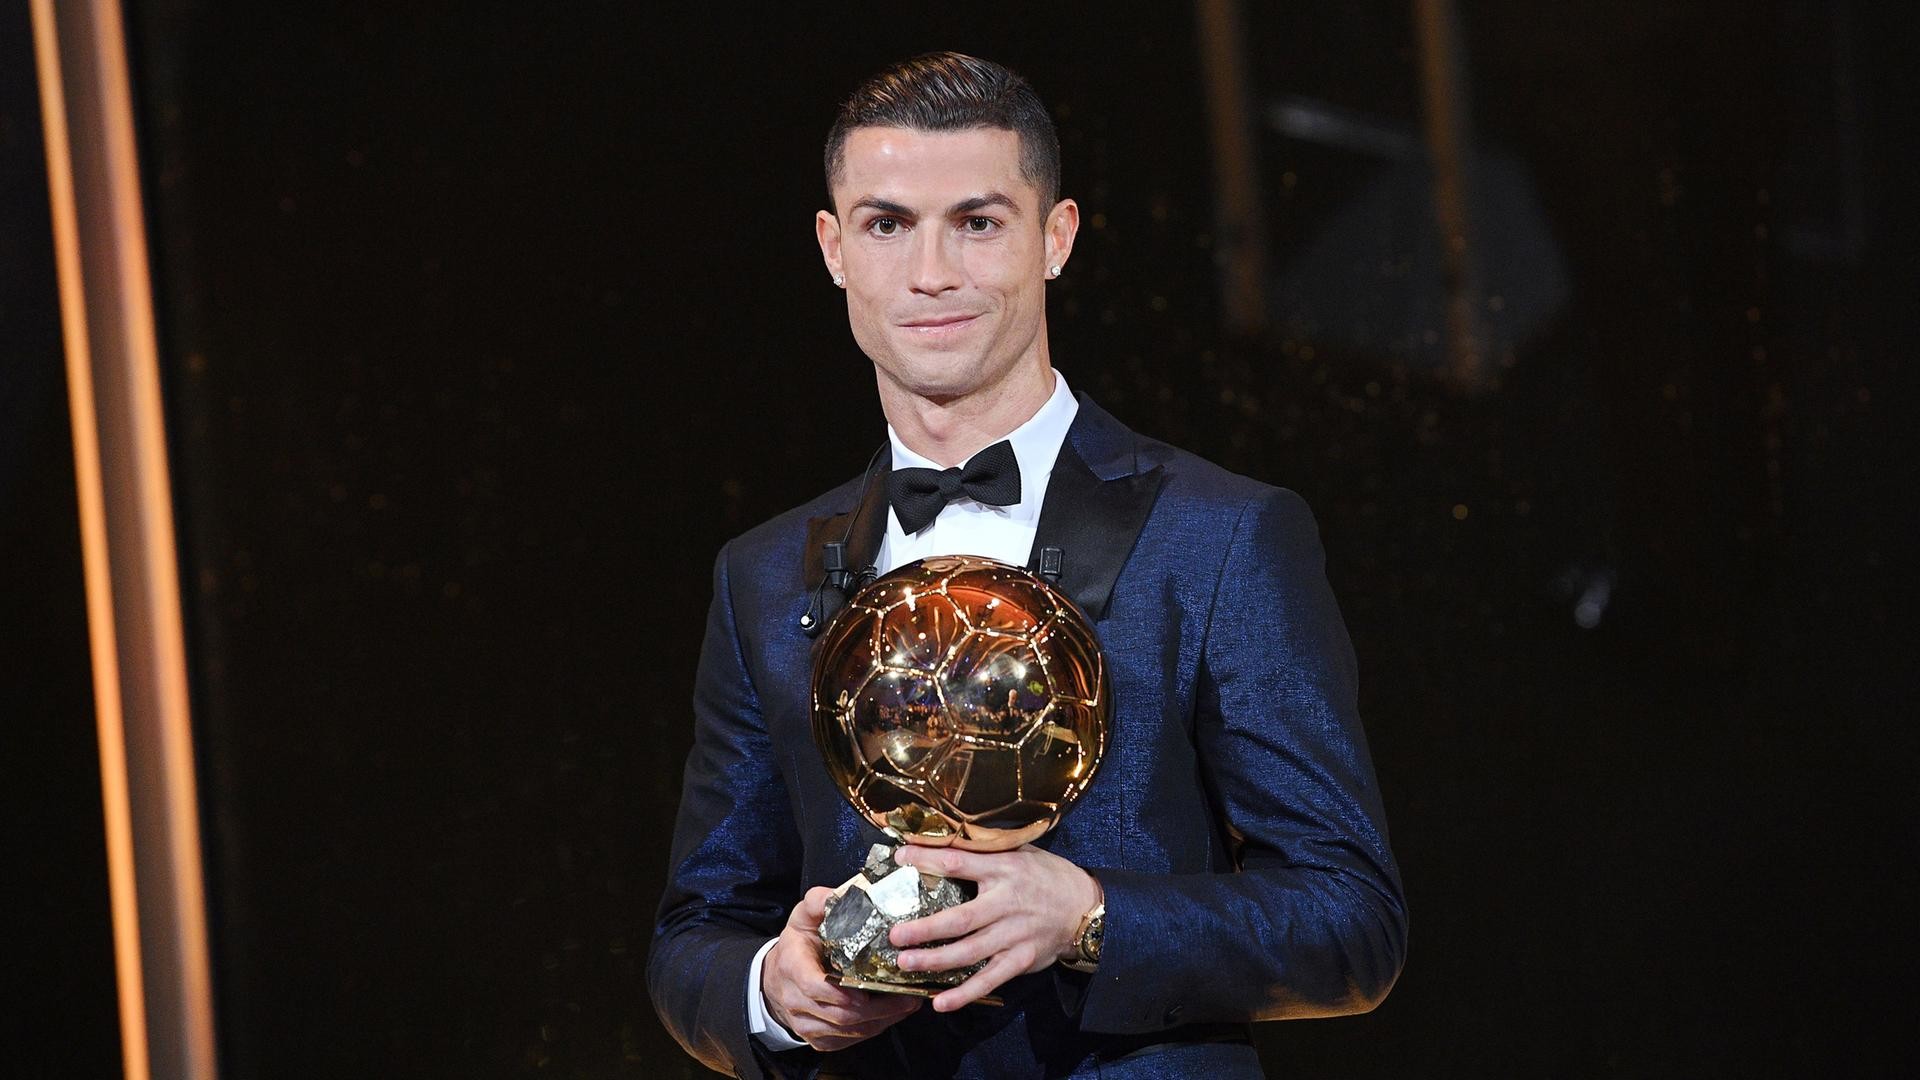 1920x1080 Auszeichnung zum WeltfuÃballer - Ronaldo gewinnt Ballon d'Or